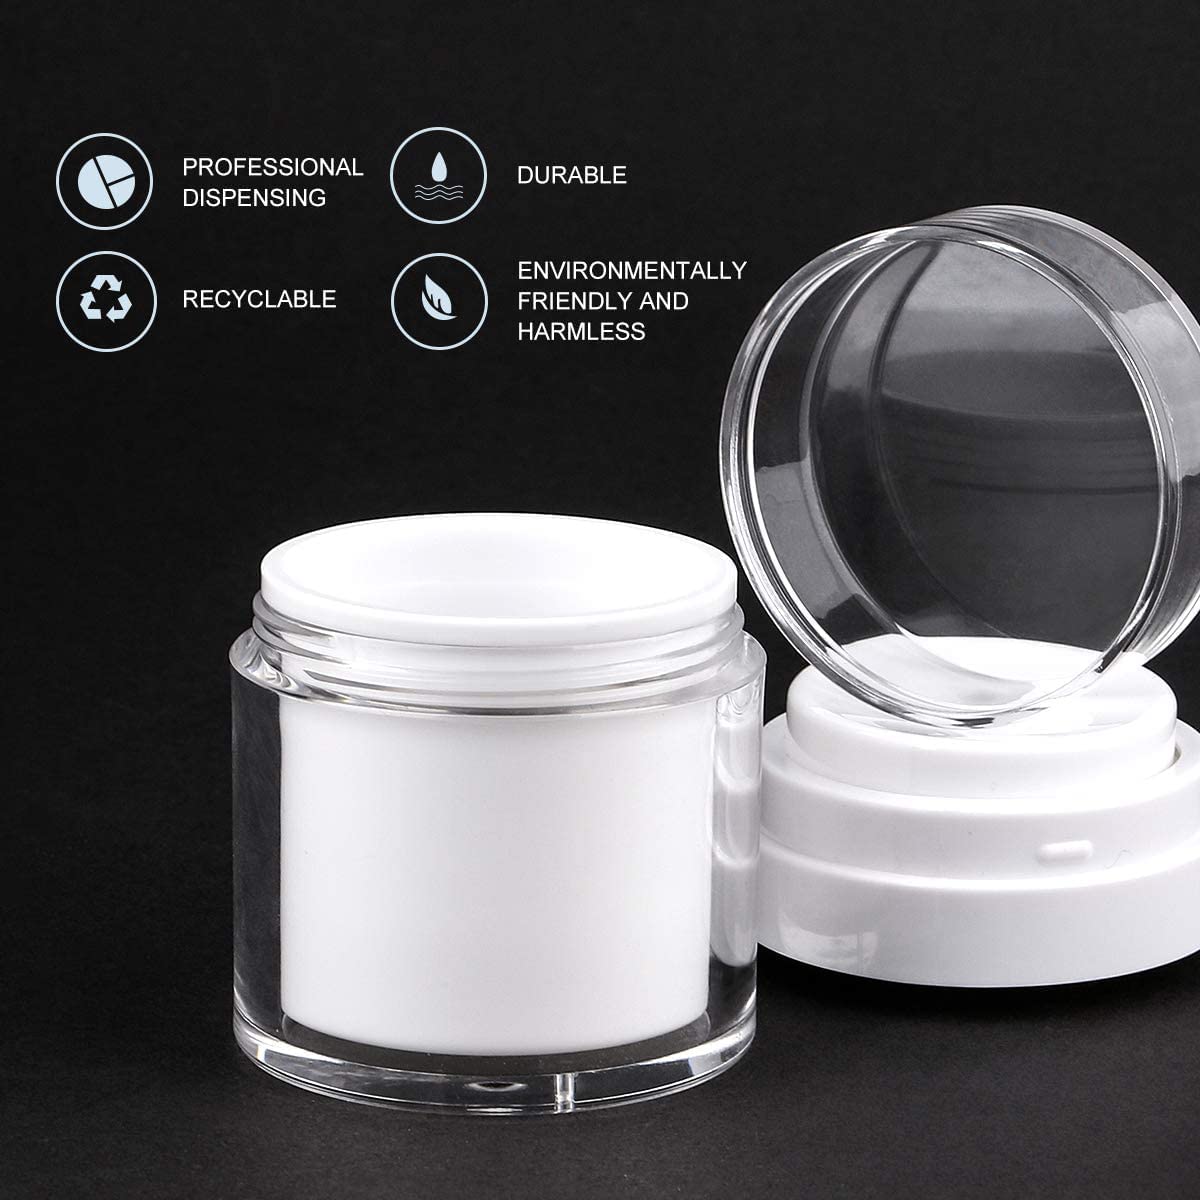  Face Cream Dispenser Containers 